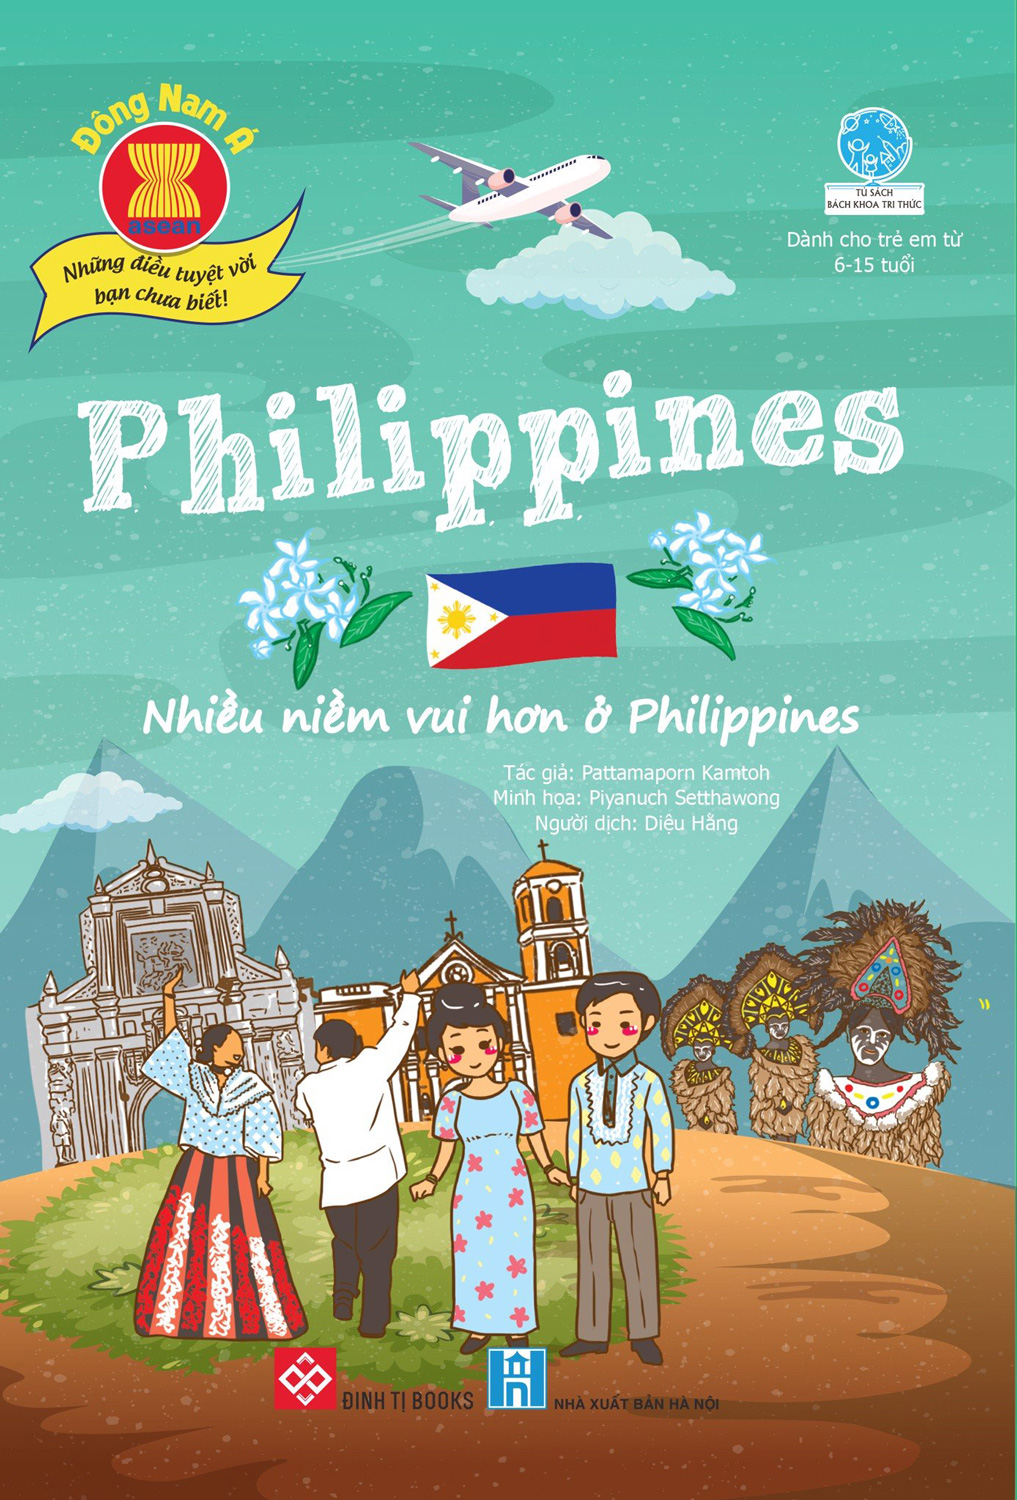 Đông Nam Á - Những Điều Tuyệt Vời Bạn Chưa Biết: Philippines - Nhiều Niềm Vui Hơn Ở Philippines